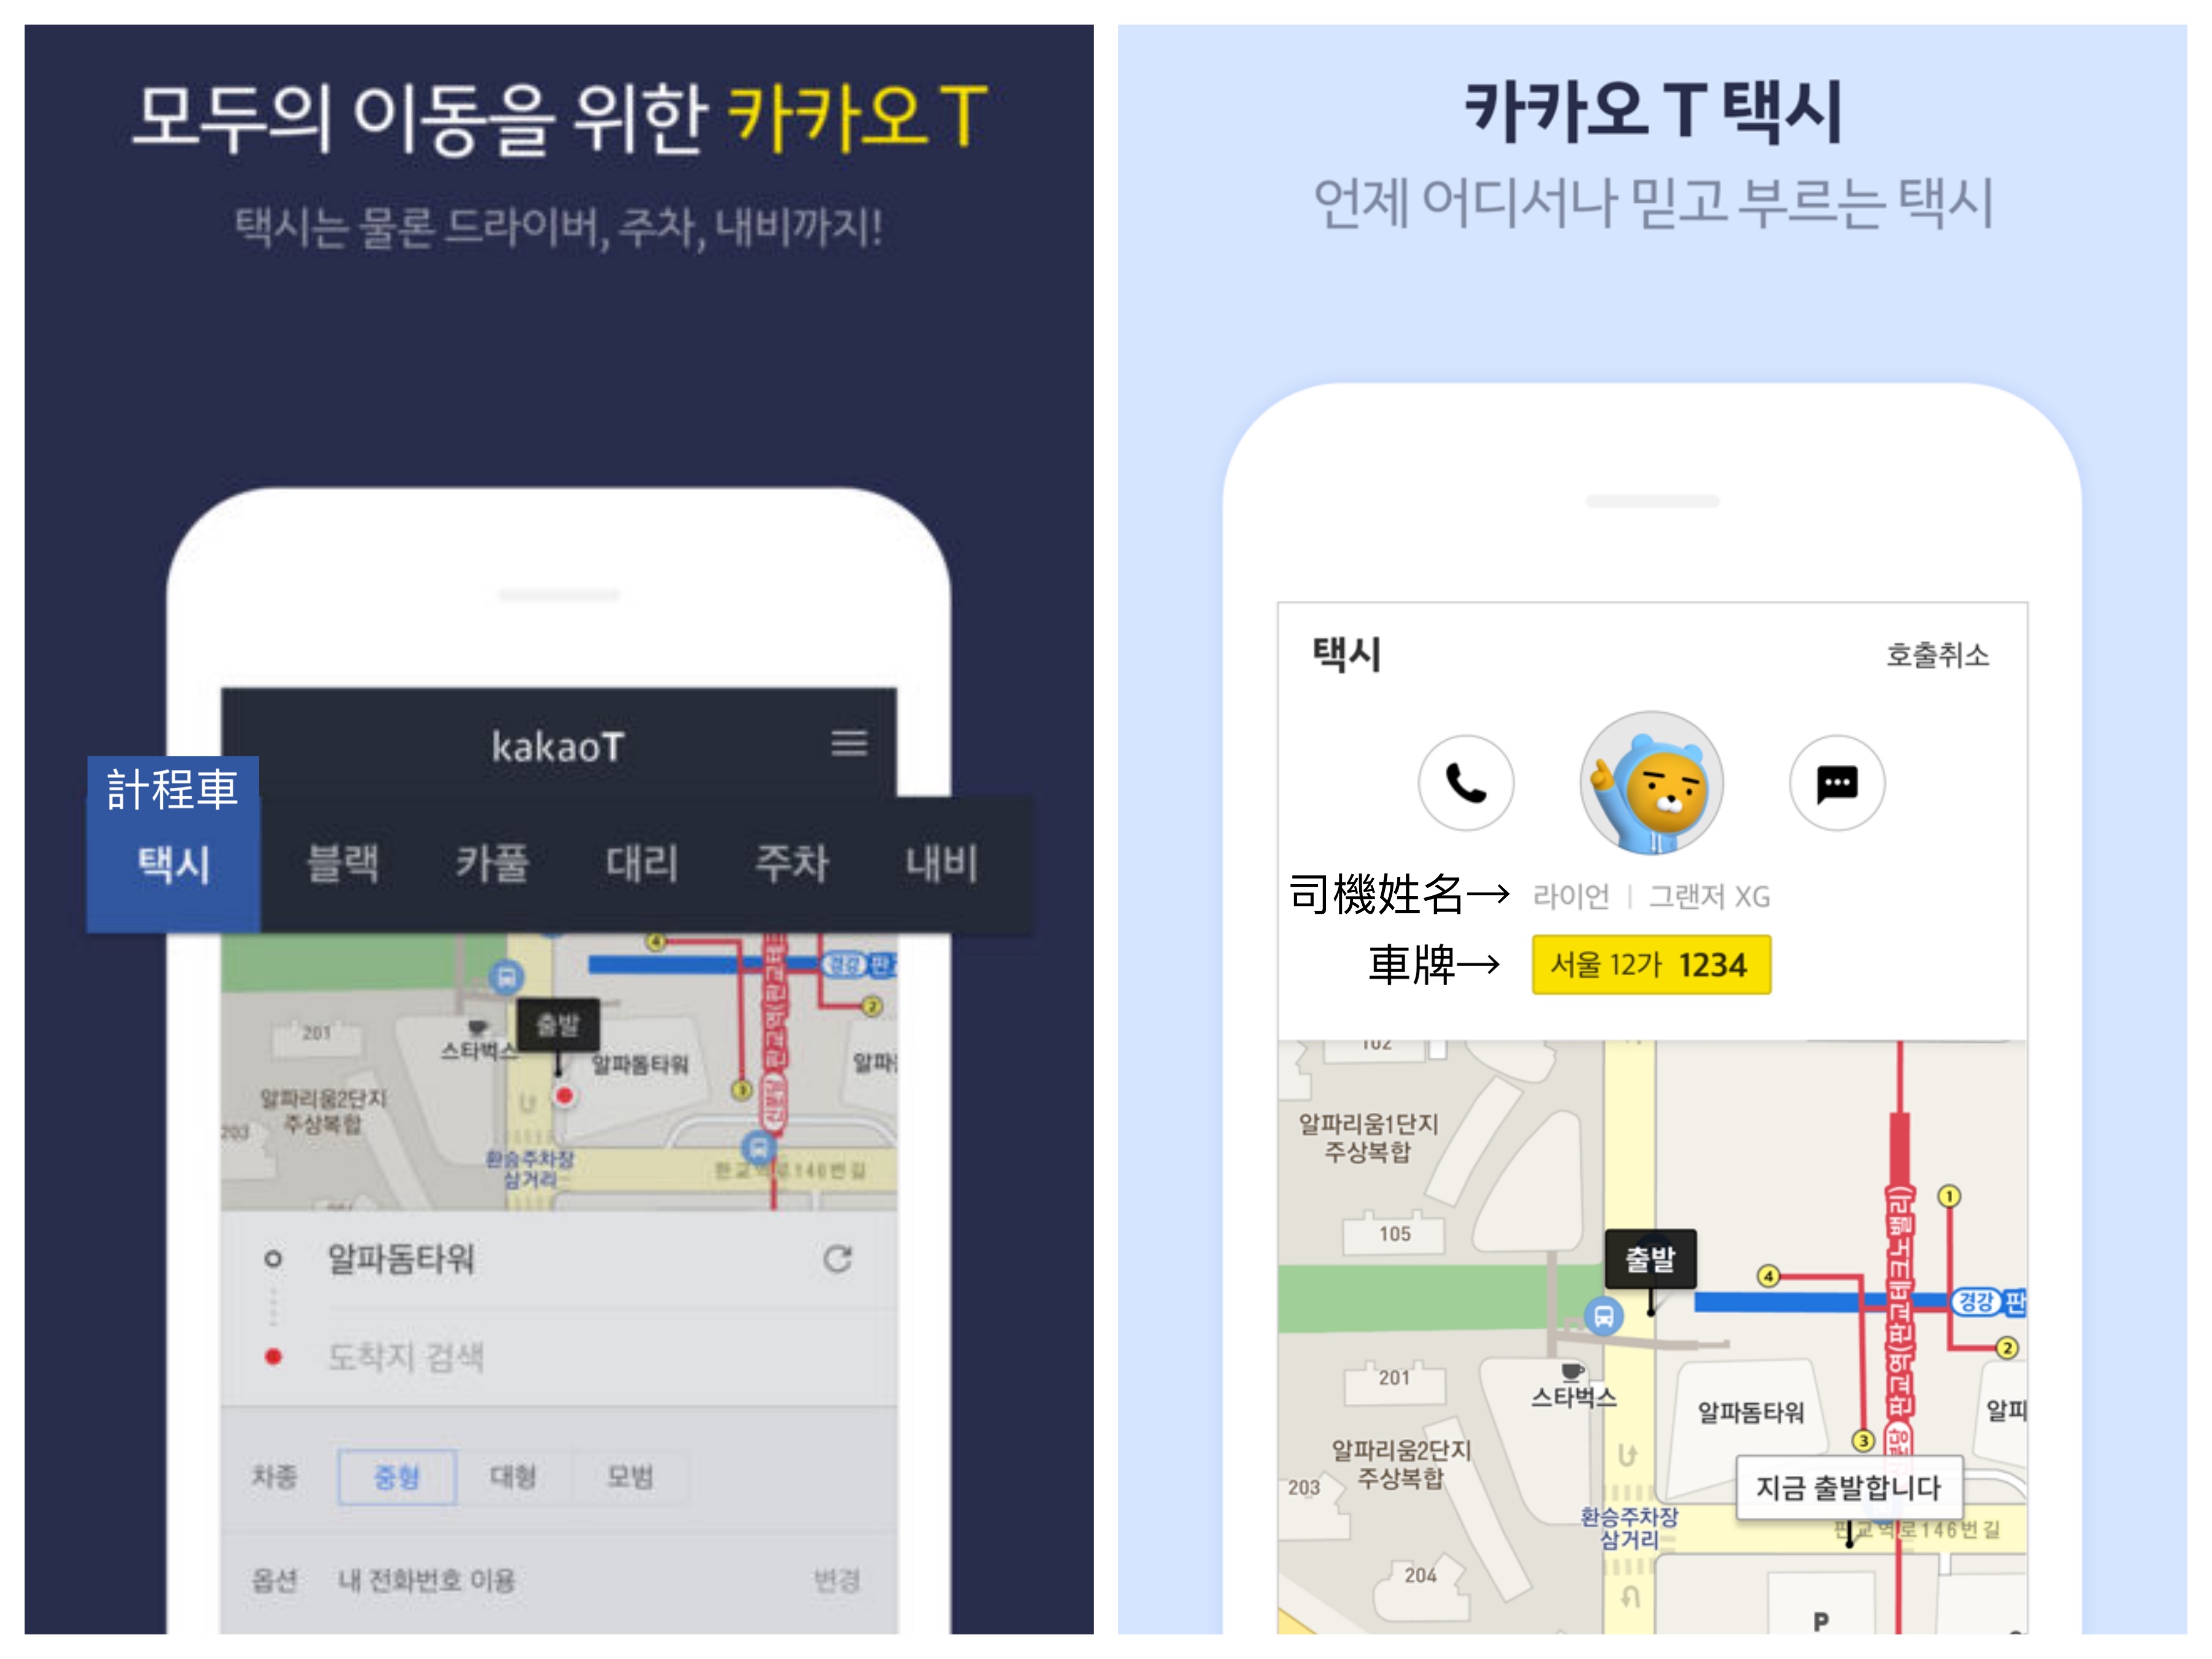 韓國旅遊APP 韓國旅行APP 韓國app 韓國 旅遊 app 韓國地鐵app 韓國 app 推薦 韓國app KAKAO TAXI KAKAO T 카카오 T 韓國taxi 韓國計程車 韓國的士 韓國叫車app 首爾的士 首爾計程車 首爾taxi seoul taxi app